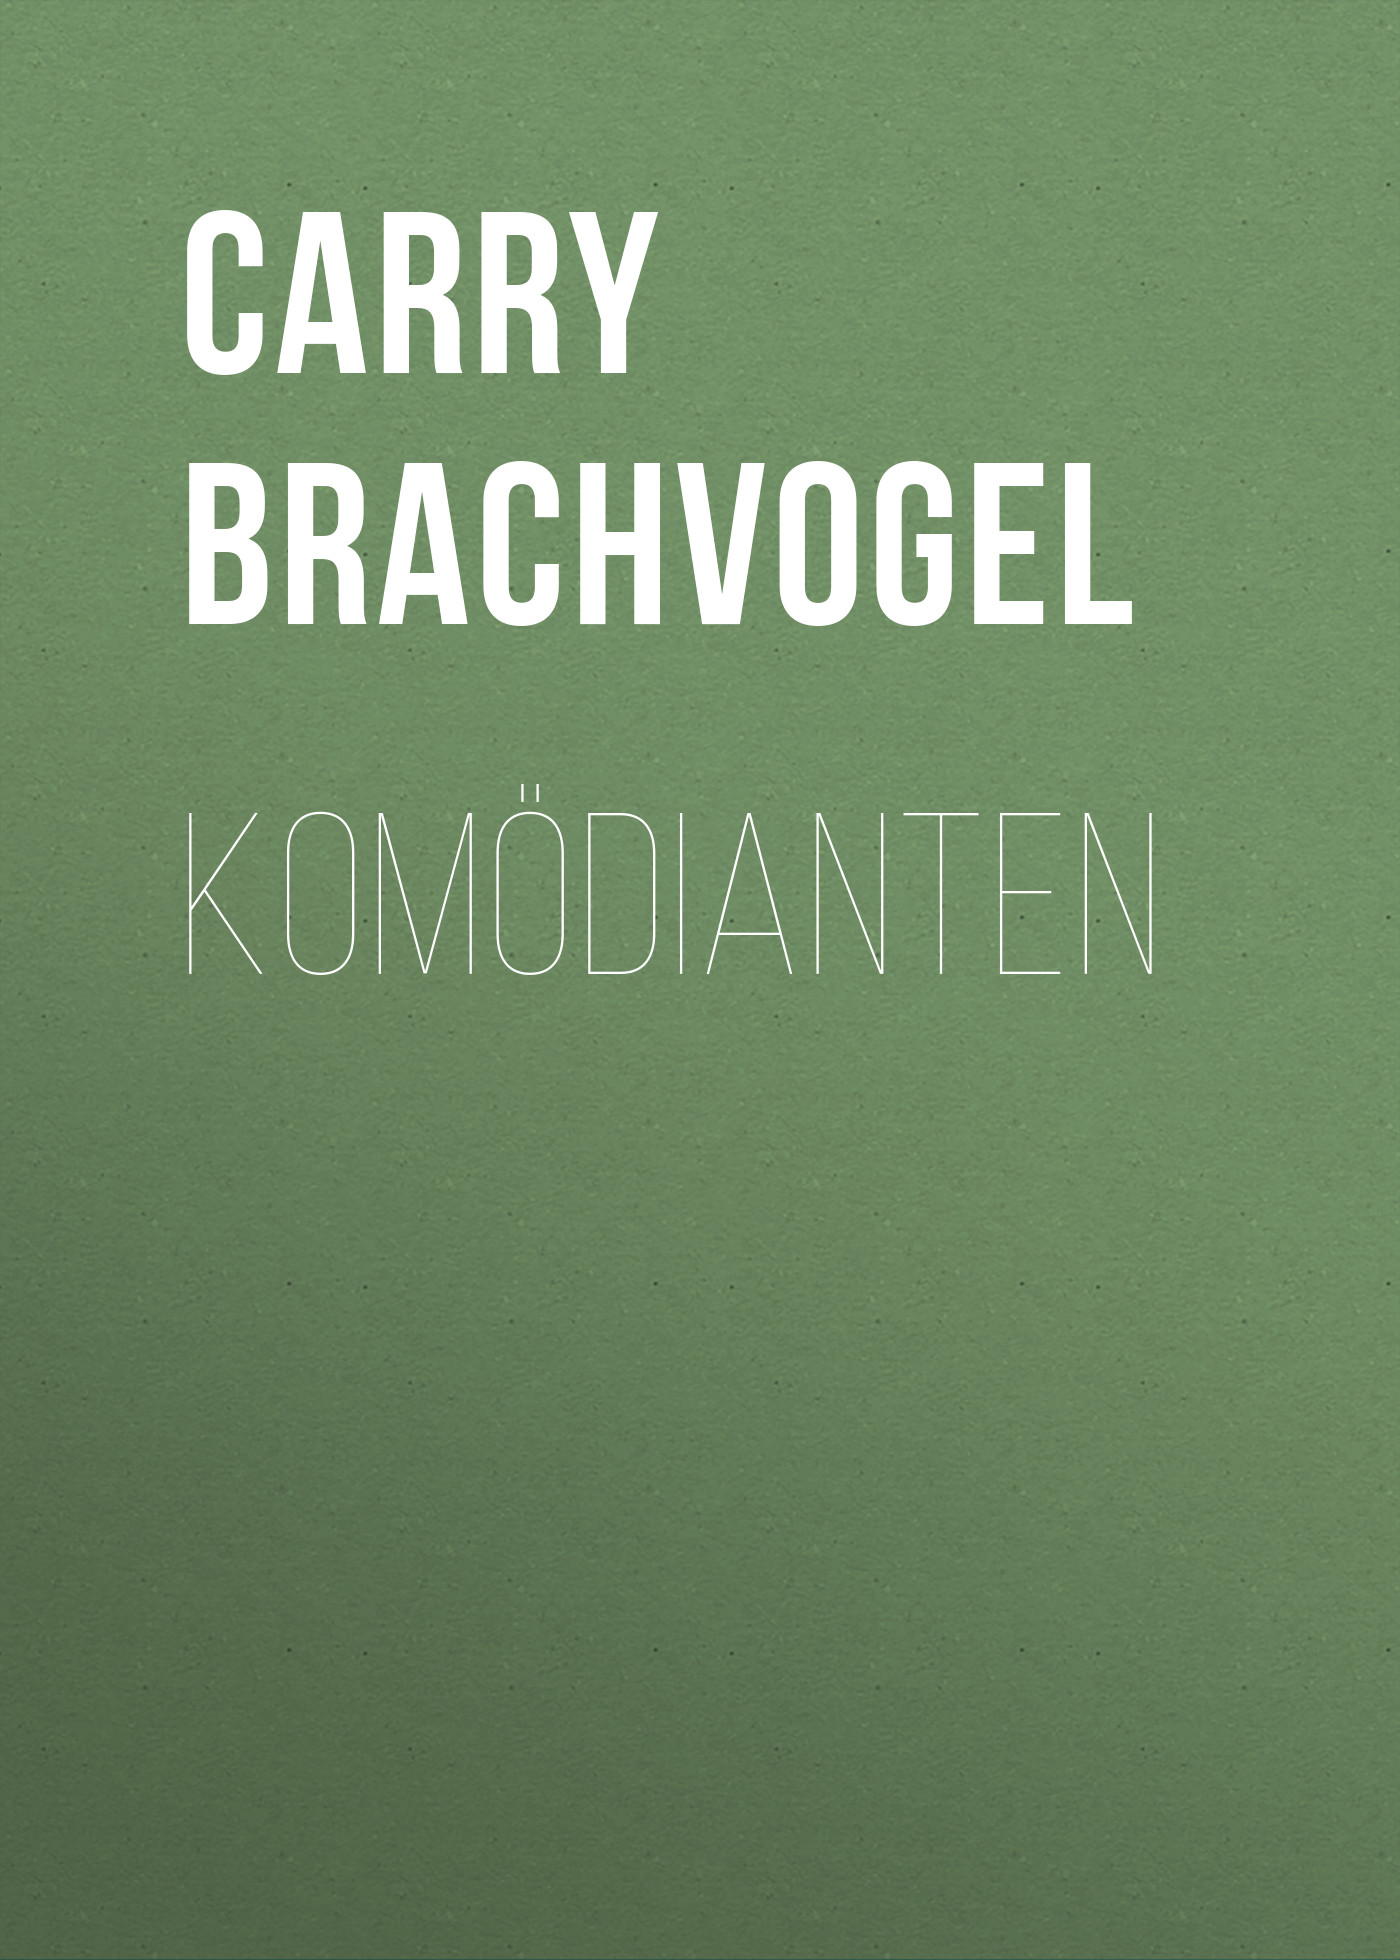 Книга Komödianten из серии , созданная Carry Brachvogel, может относится к жанру Зарубежная классика. Стоимость электронной книги Komödianten с идентификатором 48633084 составляет 0 руб.